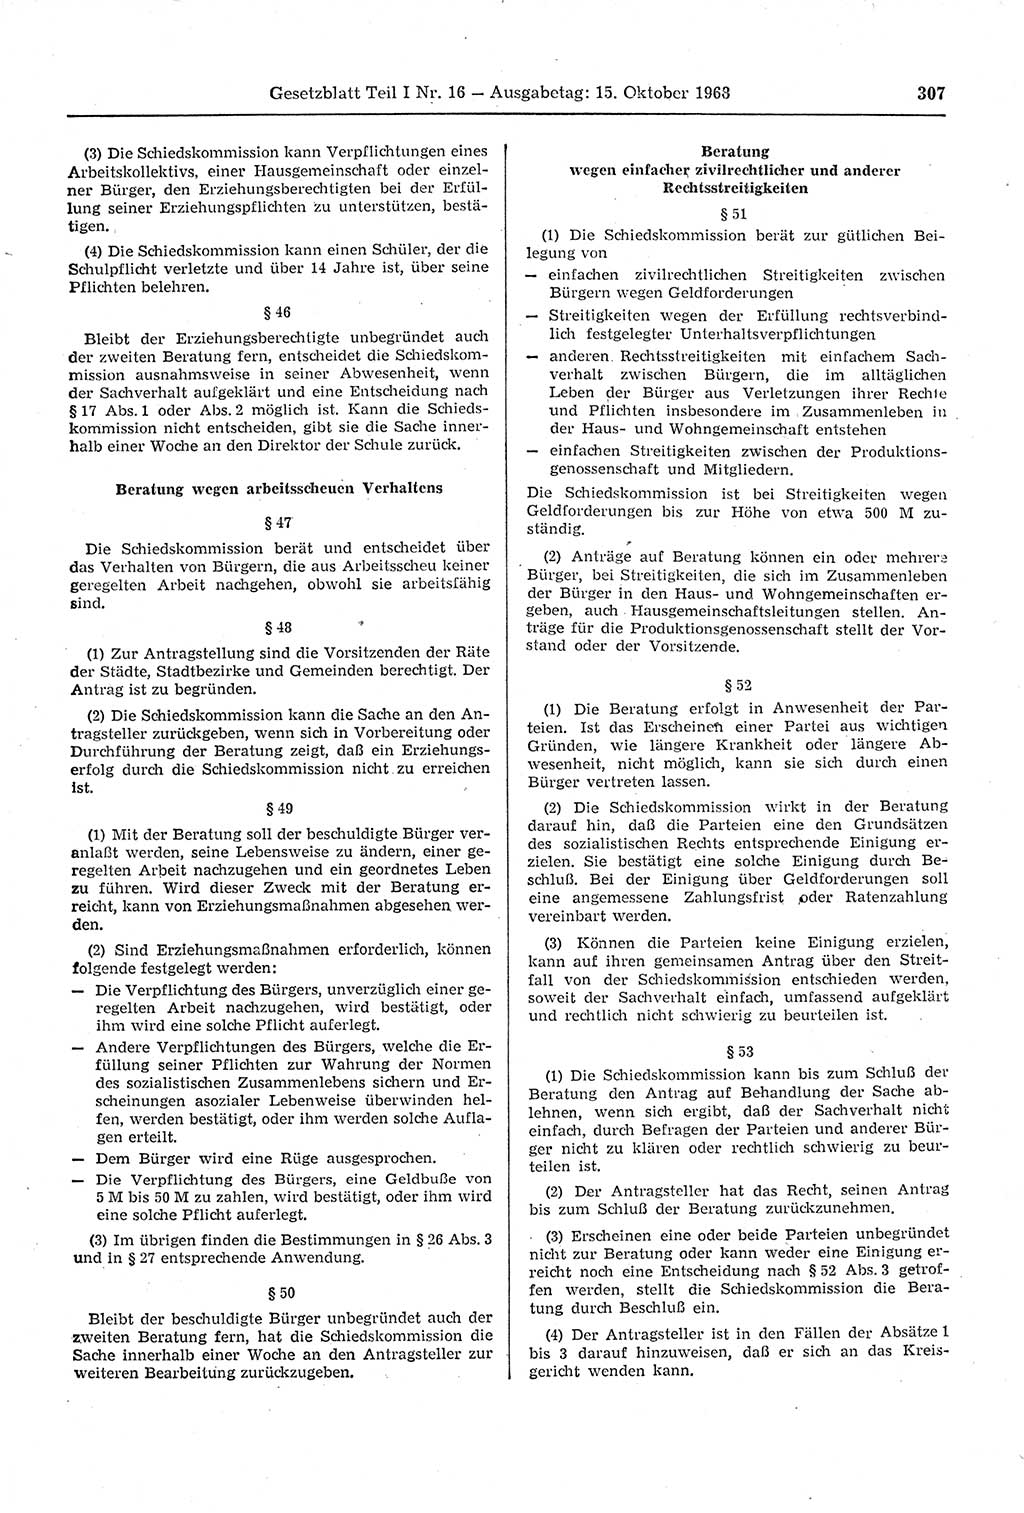 Gesetzblatt (GBl.) der Deutschen Demokratischen Republik (DDR) Teil Ⅰ 1968, Seite 307 (GBl. DDR Ⅰ 1968, S. 307)